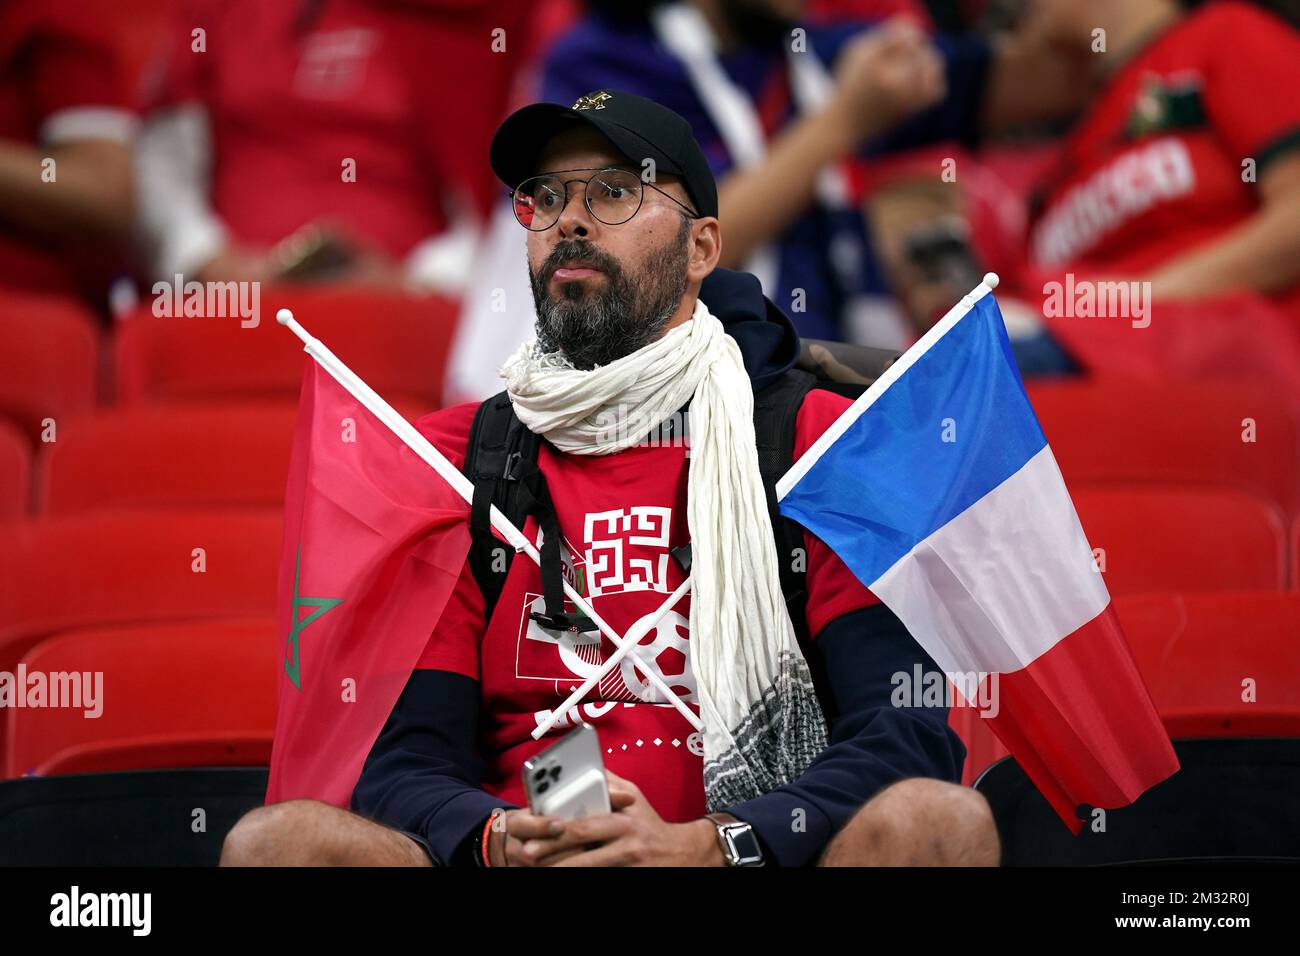 Vor dem Halbfinalspiel der FIFA-Weltmeisterschaft im Al Bayt Stadium in Al Khor, Katar, fällt ein Fan Frankreichs und Marokkos unter die Flagge. Bilddatum: Mittwoch, 14. Dezember 2022. Stockfoto